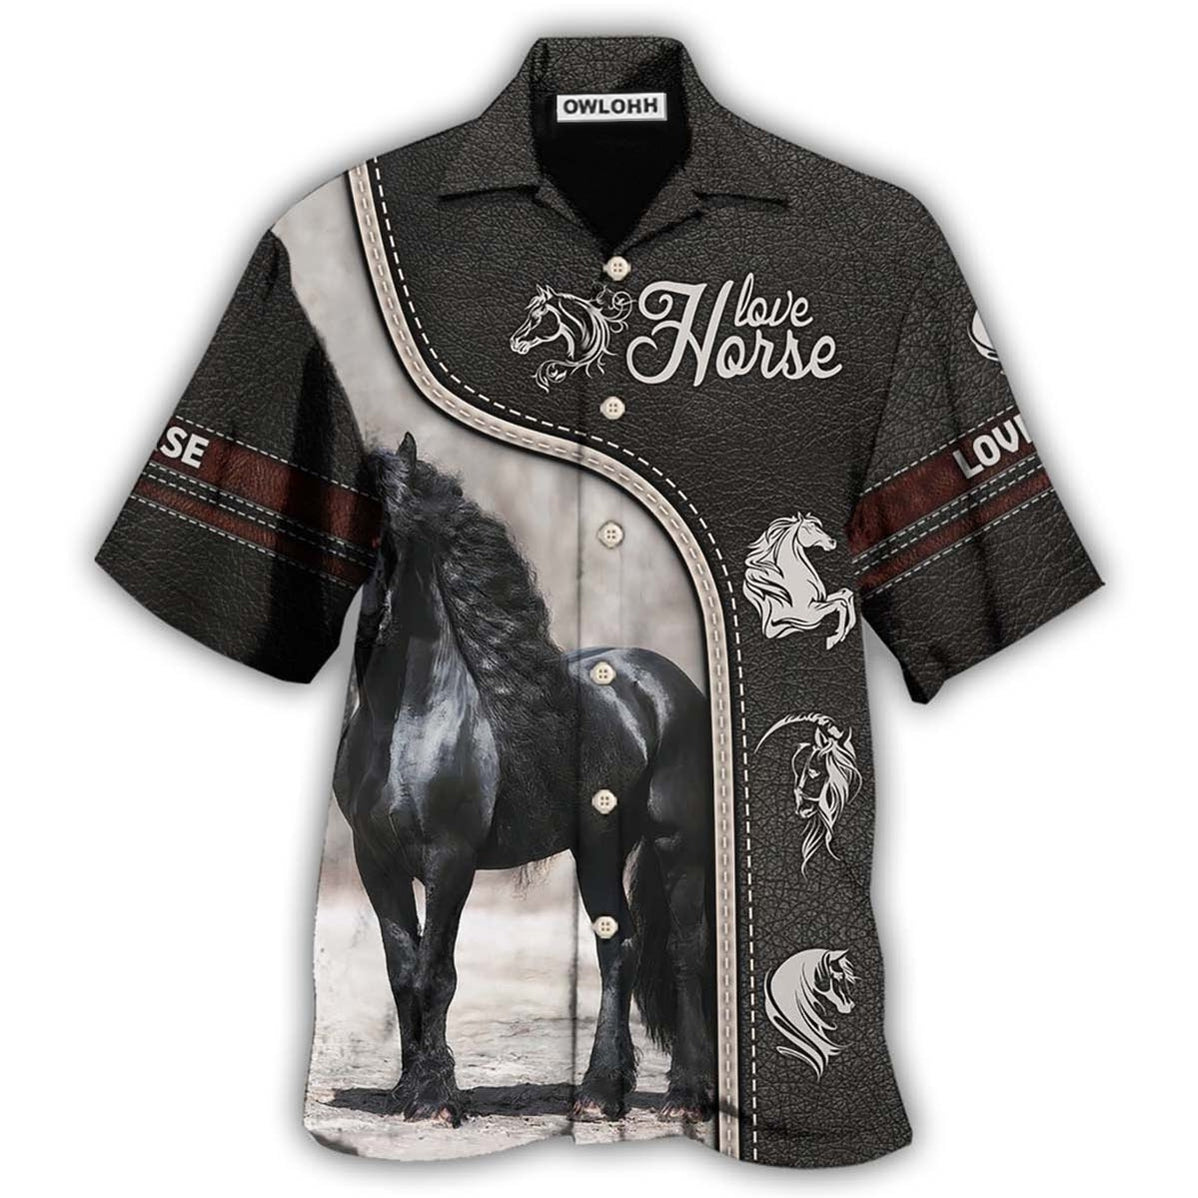 Hawaiian Shirt / Adults / S Horse Black Lover - Hawaiian Shirt - Owls Matrix LTD